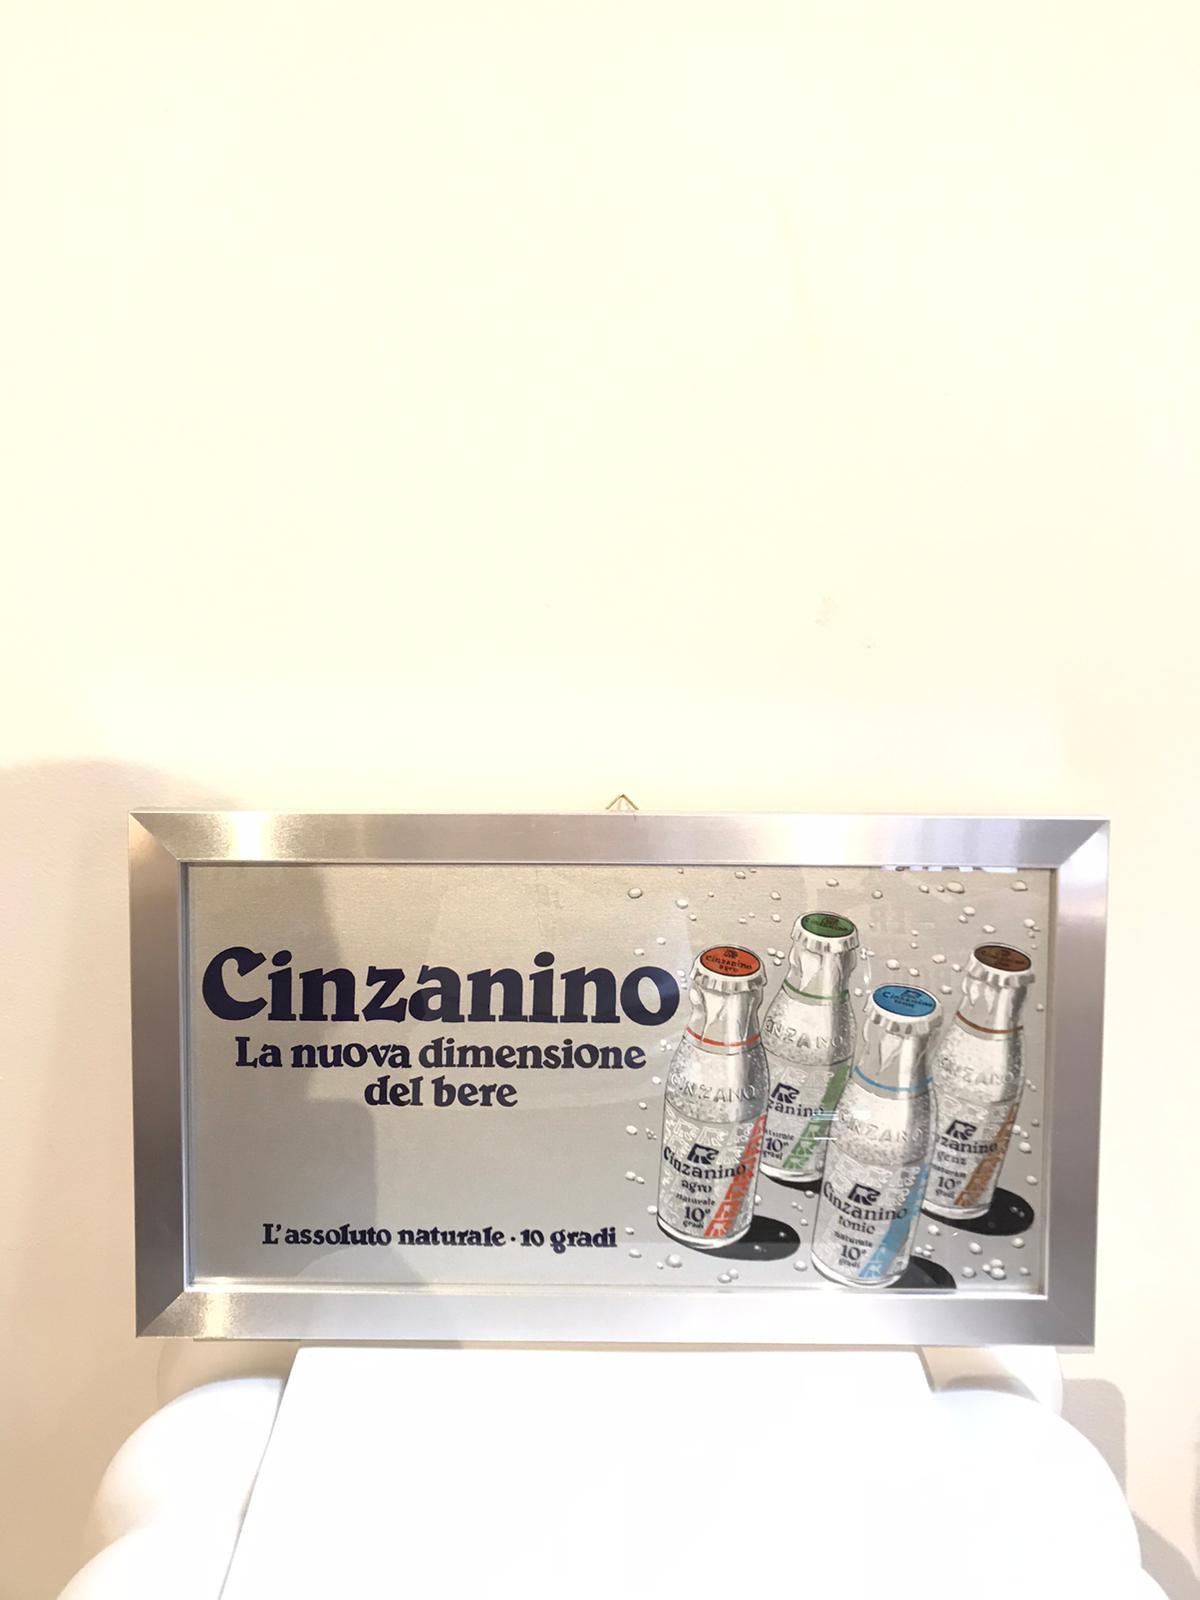 Bozzetto pubblicitario Cinzanino Torino anni '80 - TUC1873 Tortona4Arte